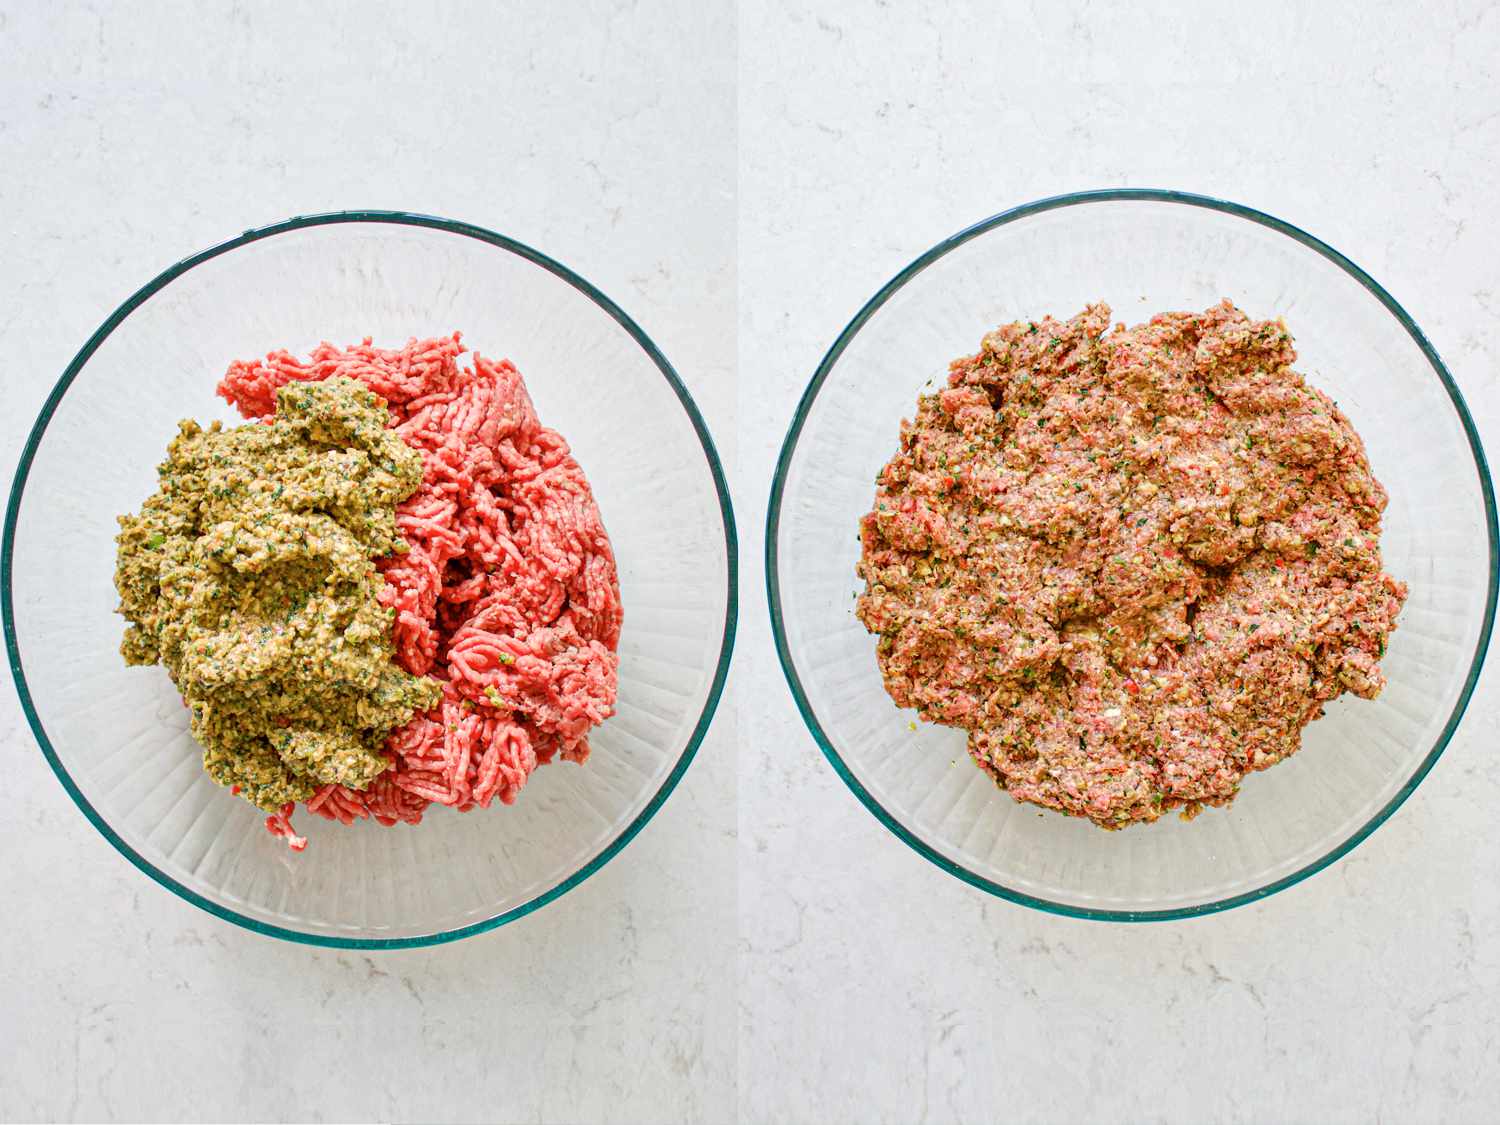 两个图像拼贴的碎肉和蔬菜和香料混合物，前后混合在一个玻璃碗